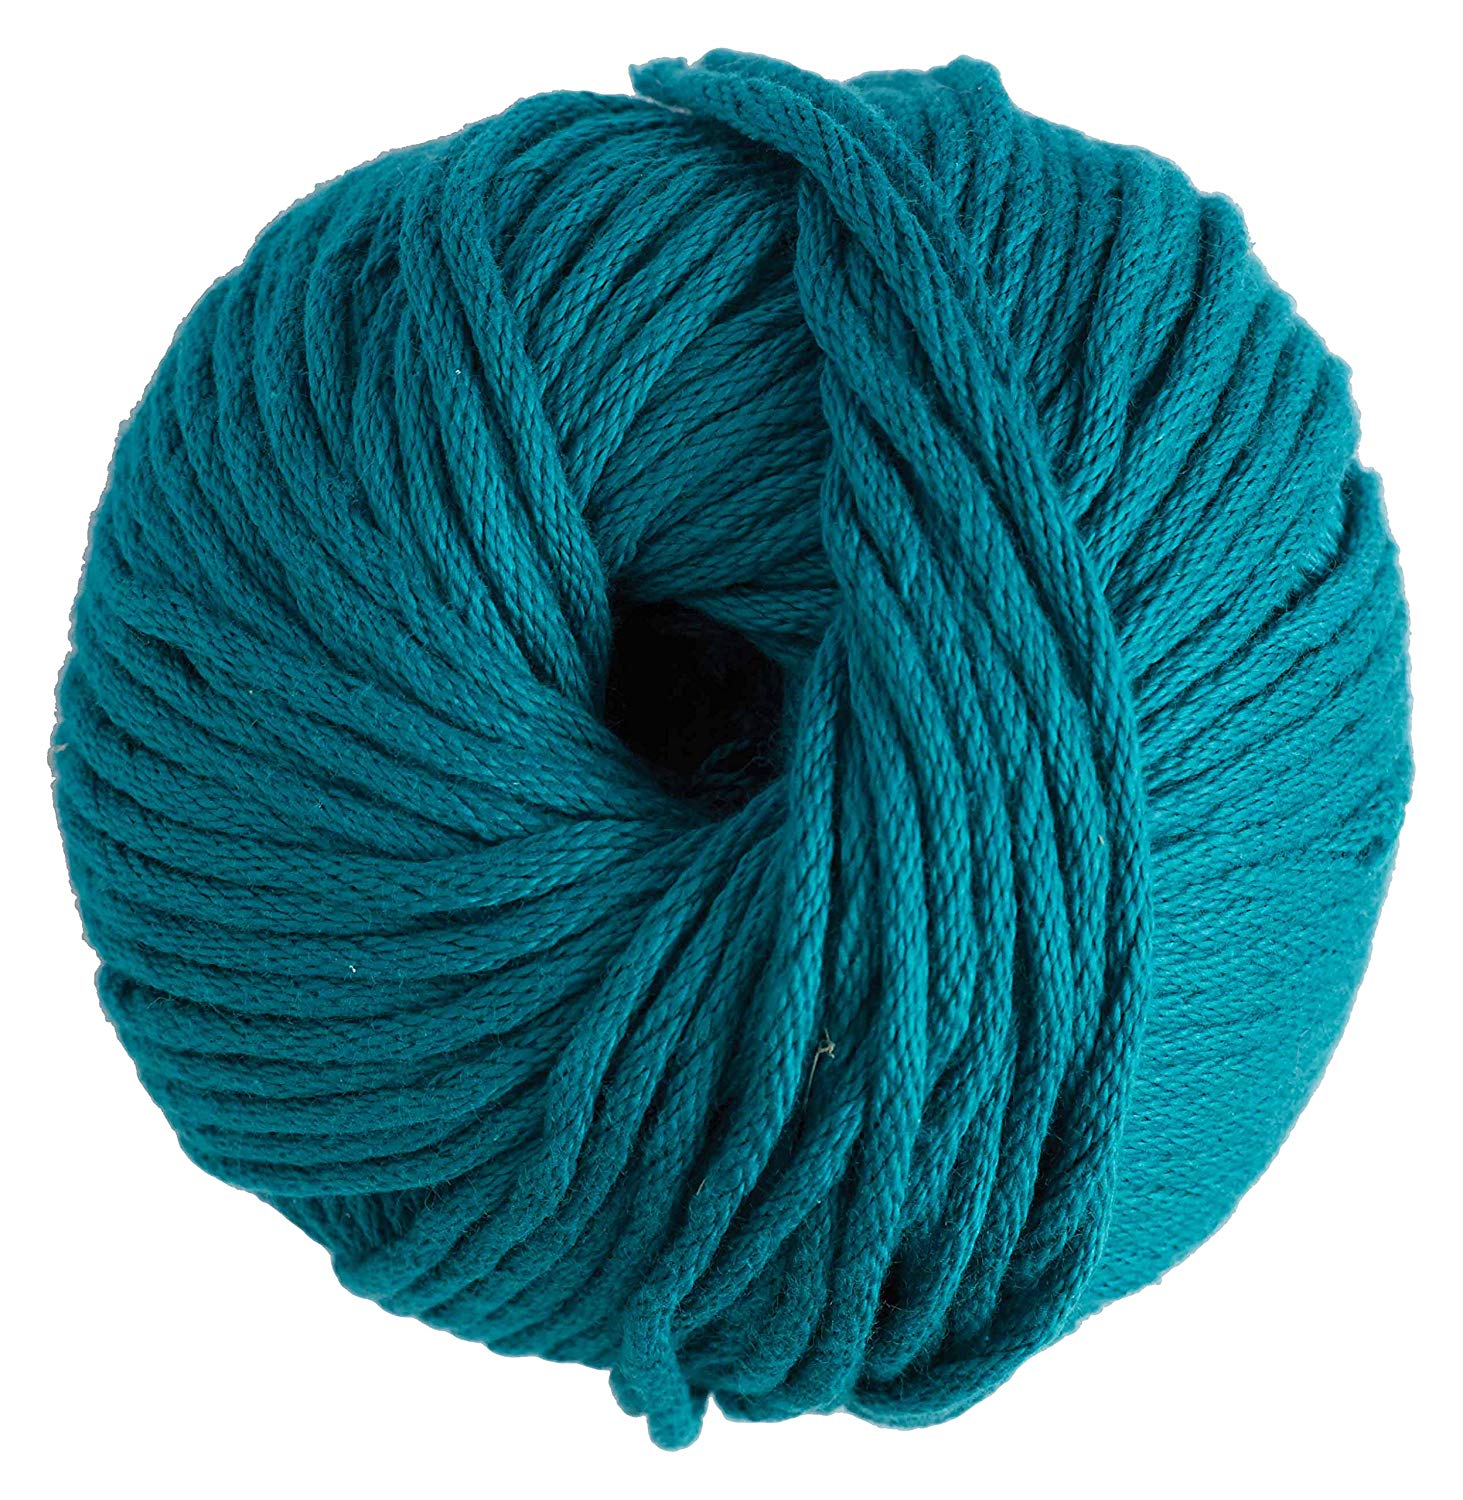 Пряжа синяя шерсть. Pamuk Cotton пряжа. Wool Yarn пряжа. Хлопковая пряжа. Моток ниток для вязания.